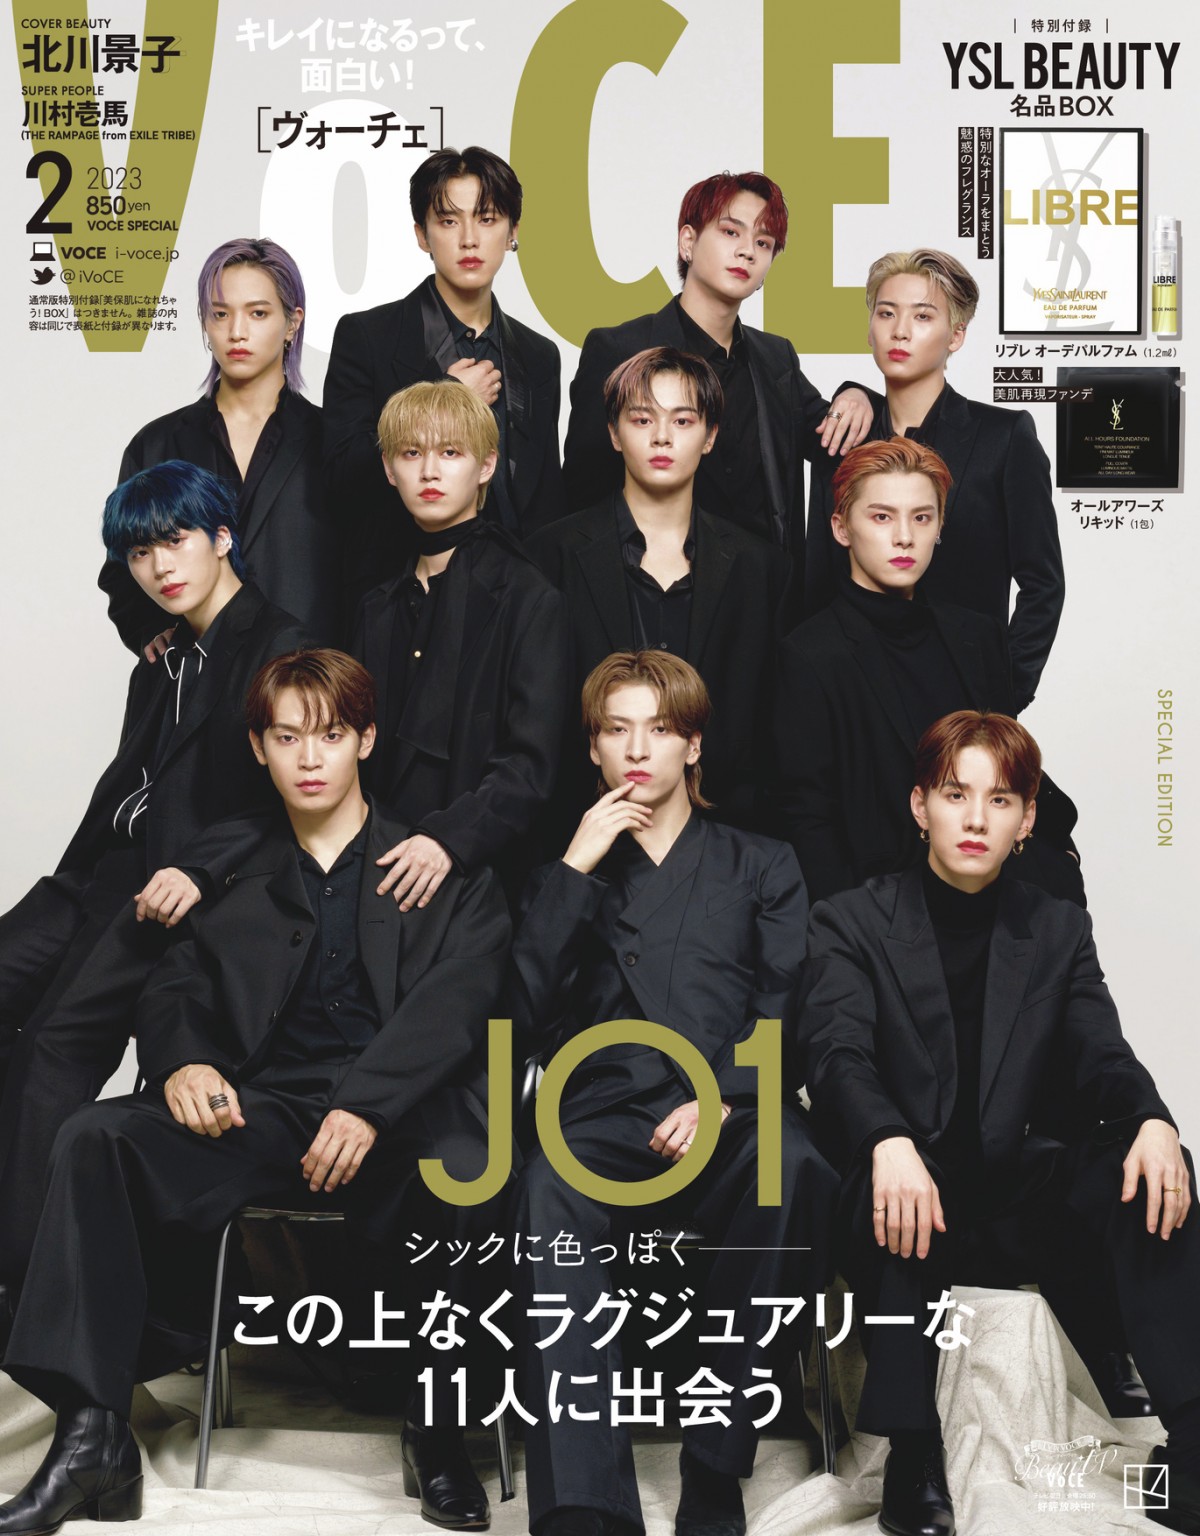 JO1“オールブラック衣装”でシック＆色っぽい姿を披露 『VOCE』初表紙